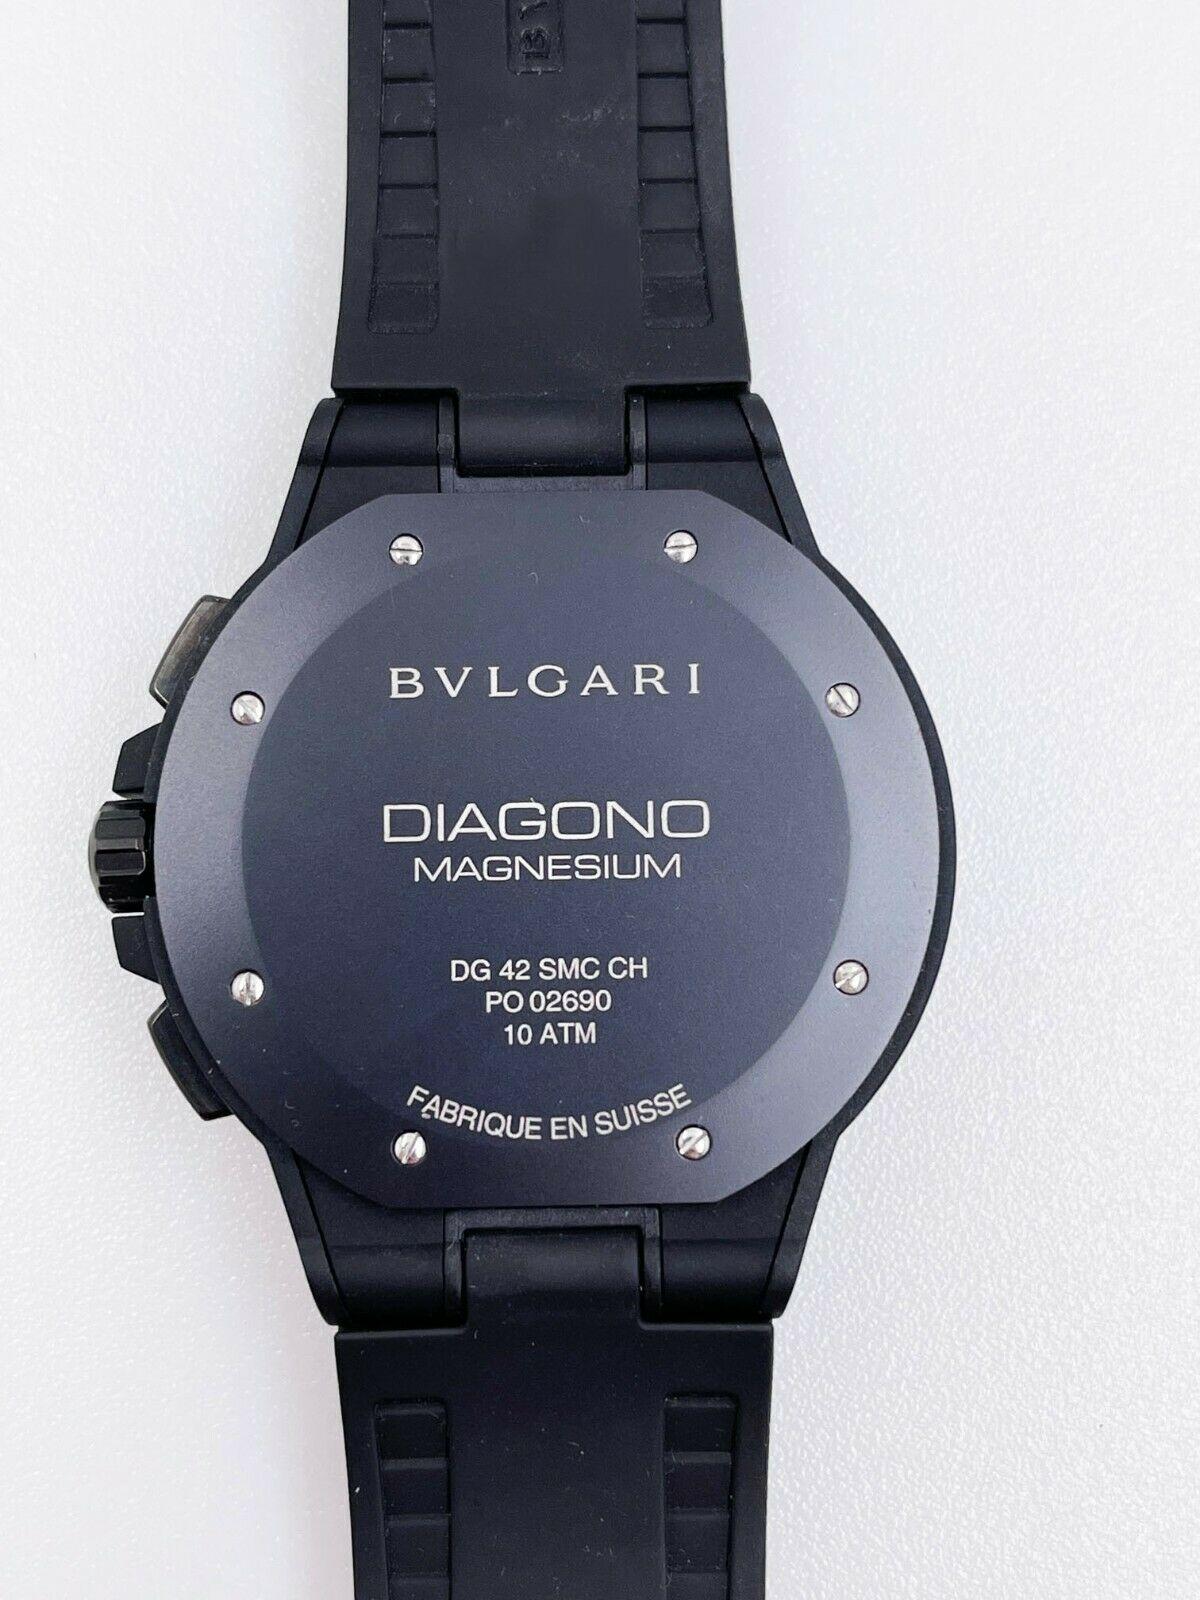 Bvlgari Diagono Magnesium Chronograph DG 42 SMC Black Ceramic Box Paper In Excellent Condition In San Diego, CA